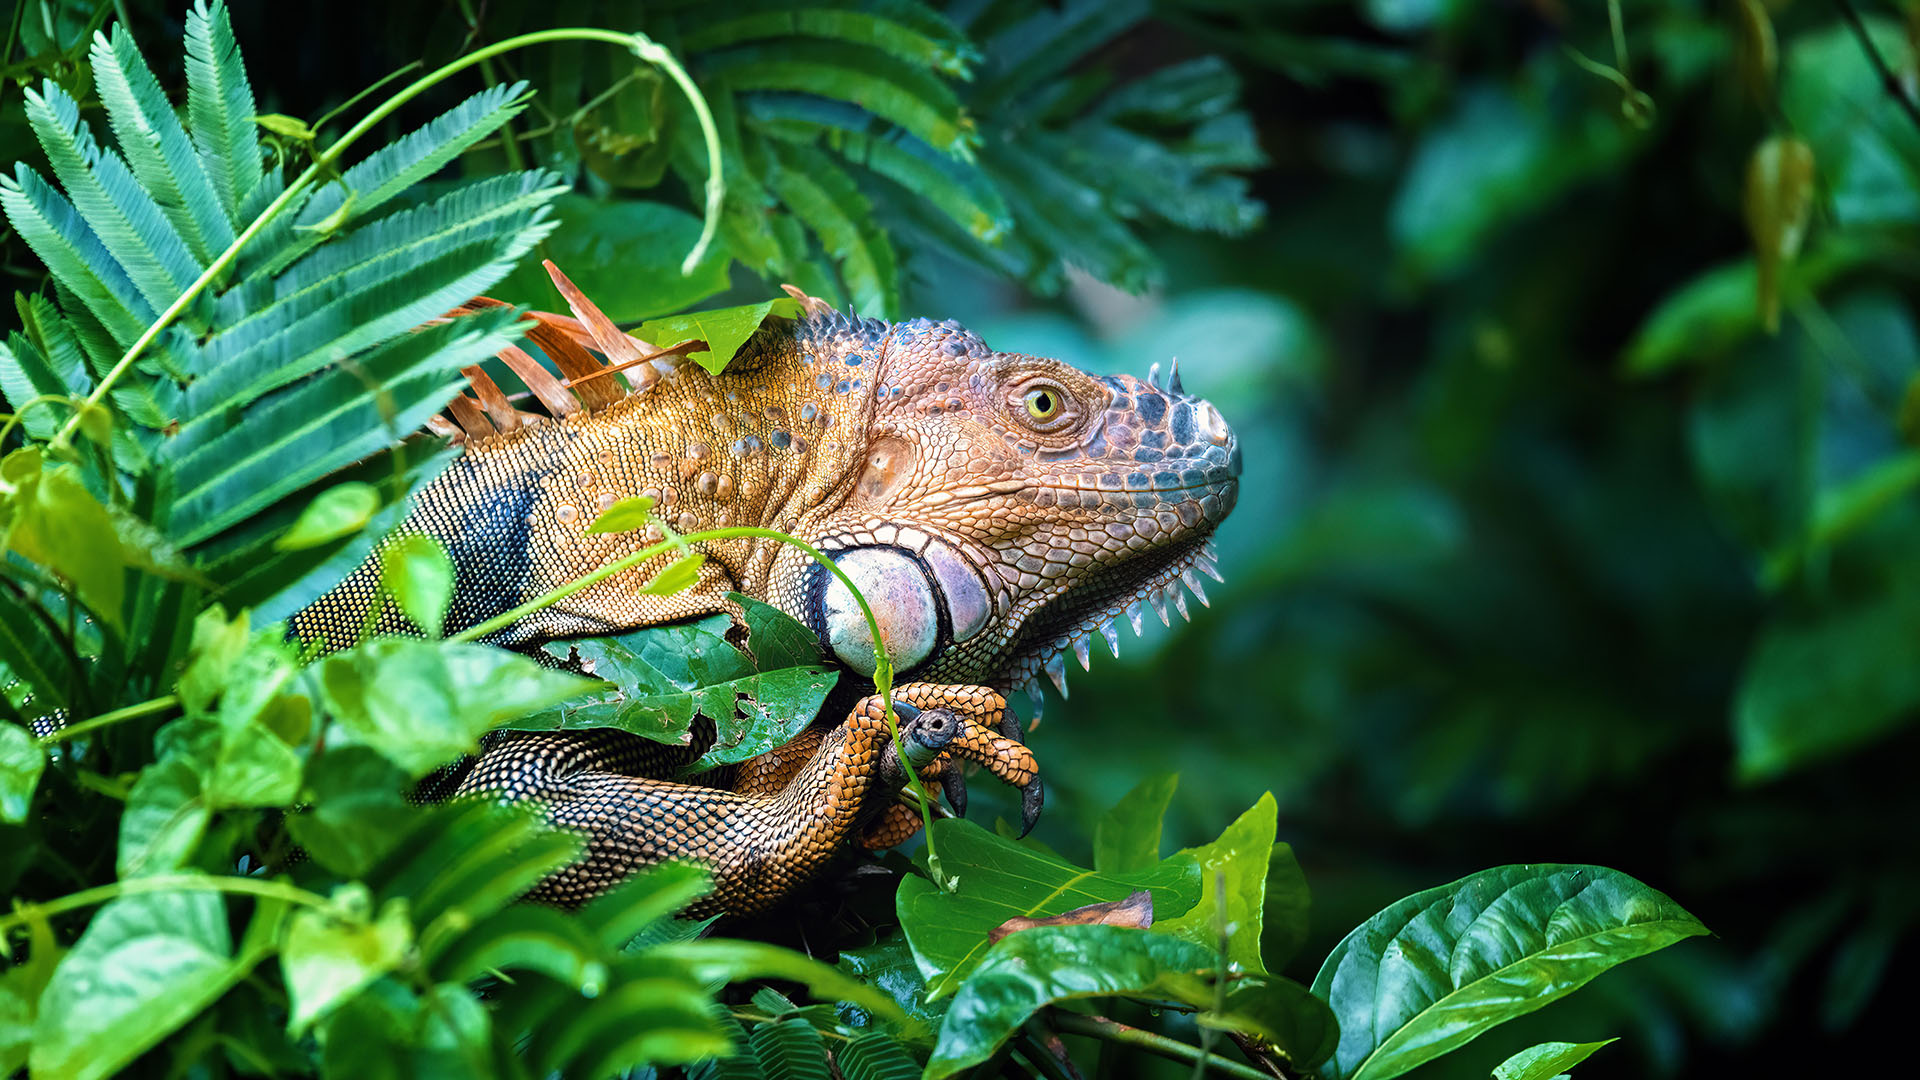 Grüner Leguan in einem tropischen Regenwald | picture alliance / Zoonar